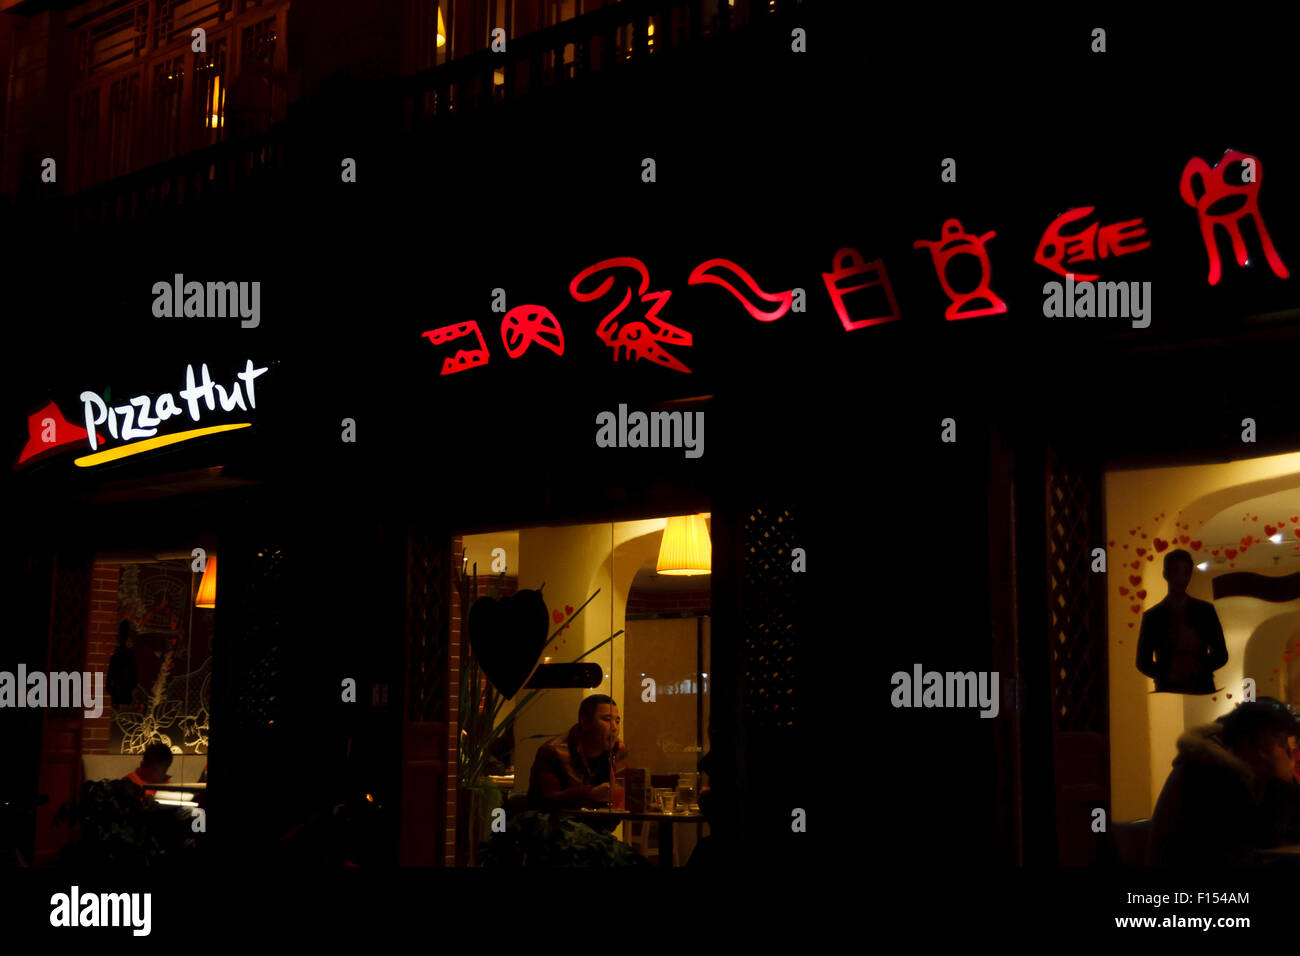 Restaurant Pizza Hut de nuit avec l'écriture pictographique Naxi dans le Yunnan, Chine Banque D'Images